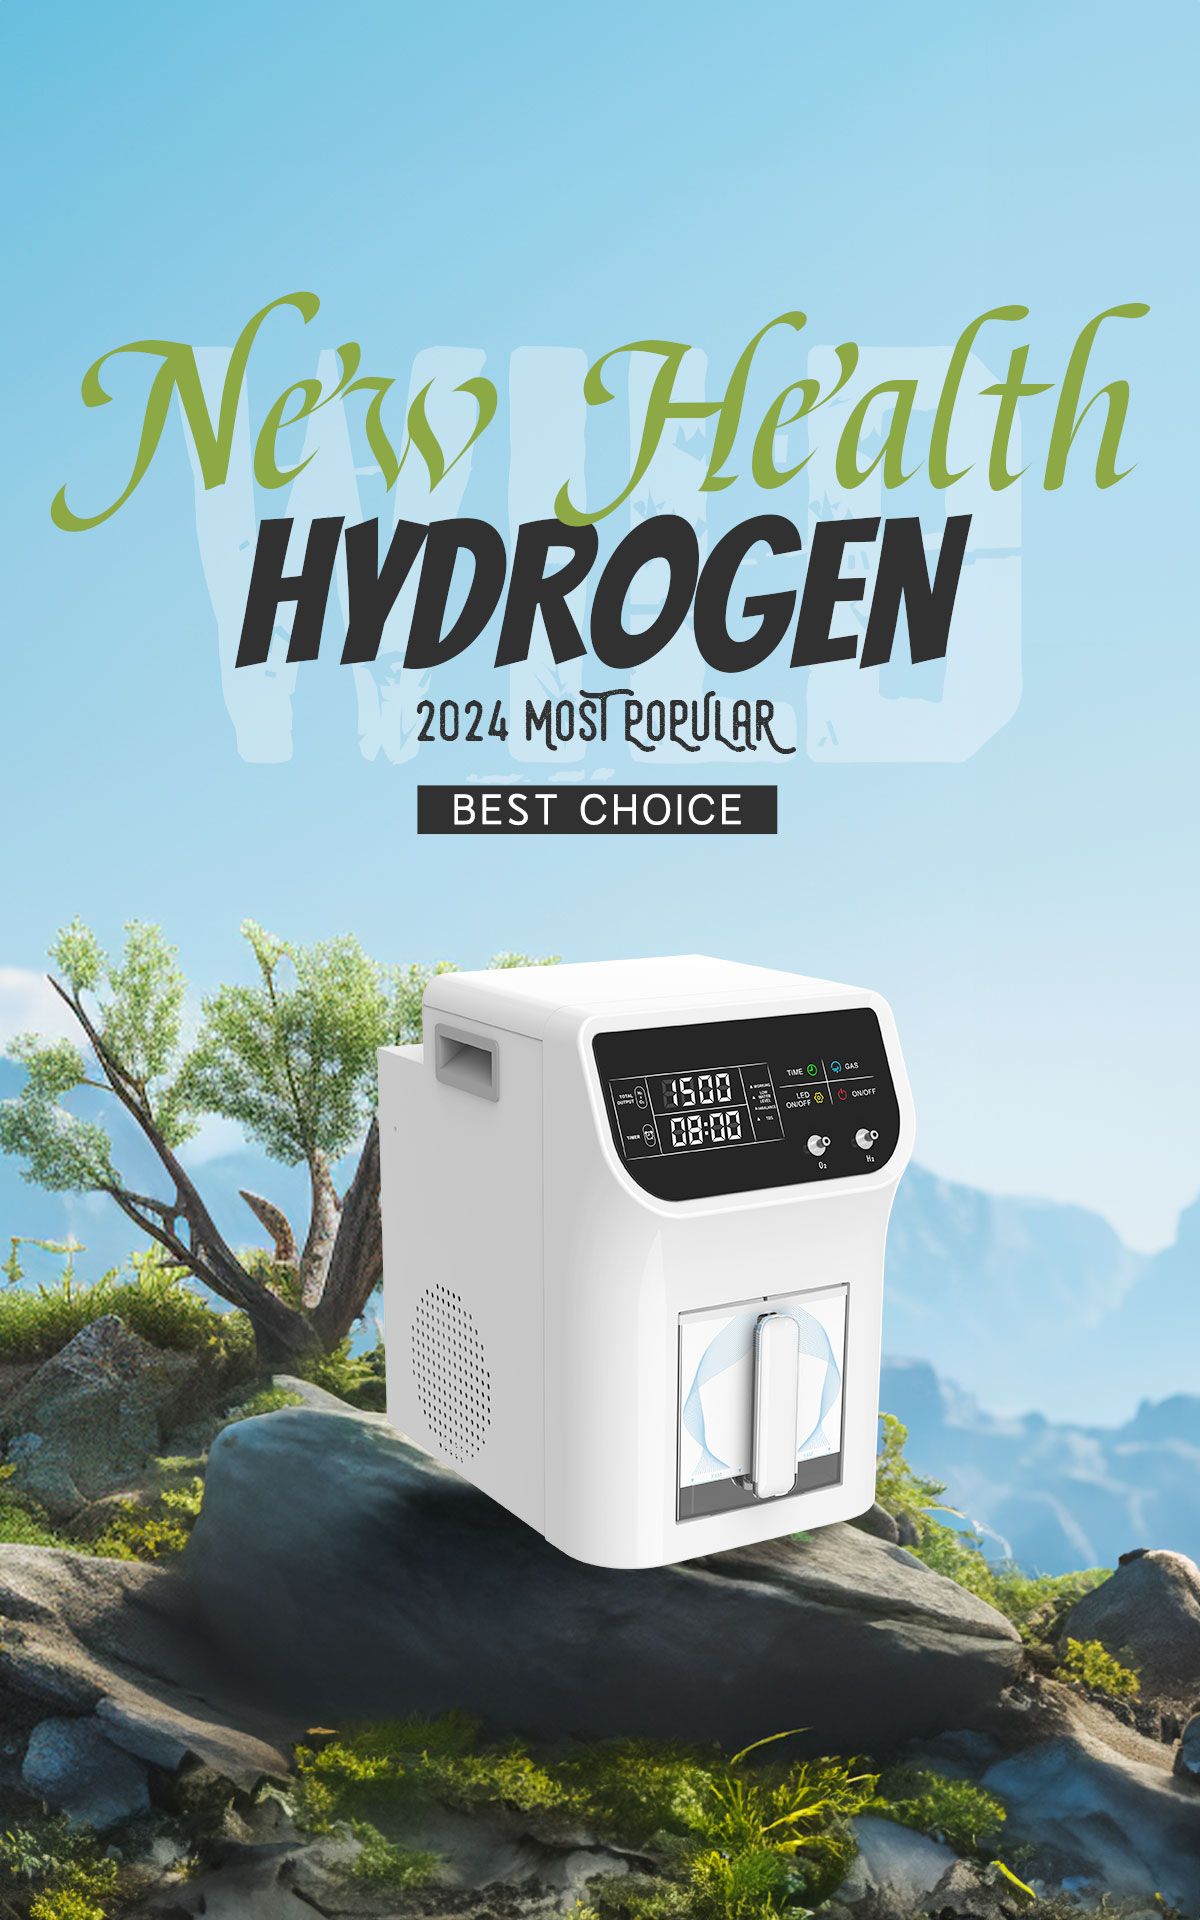 Hydrogen inhaler